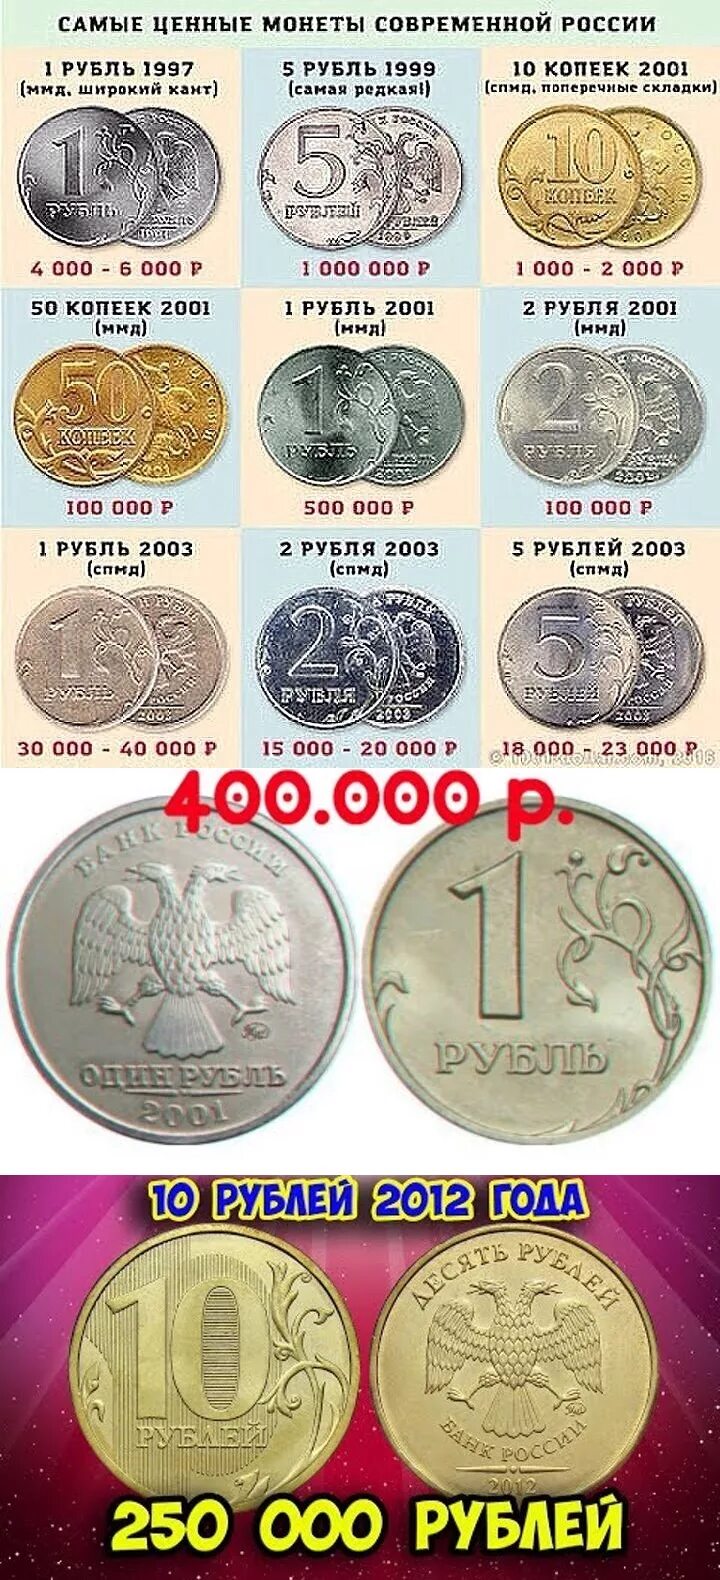 Таблица рубли